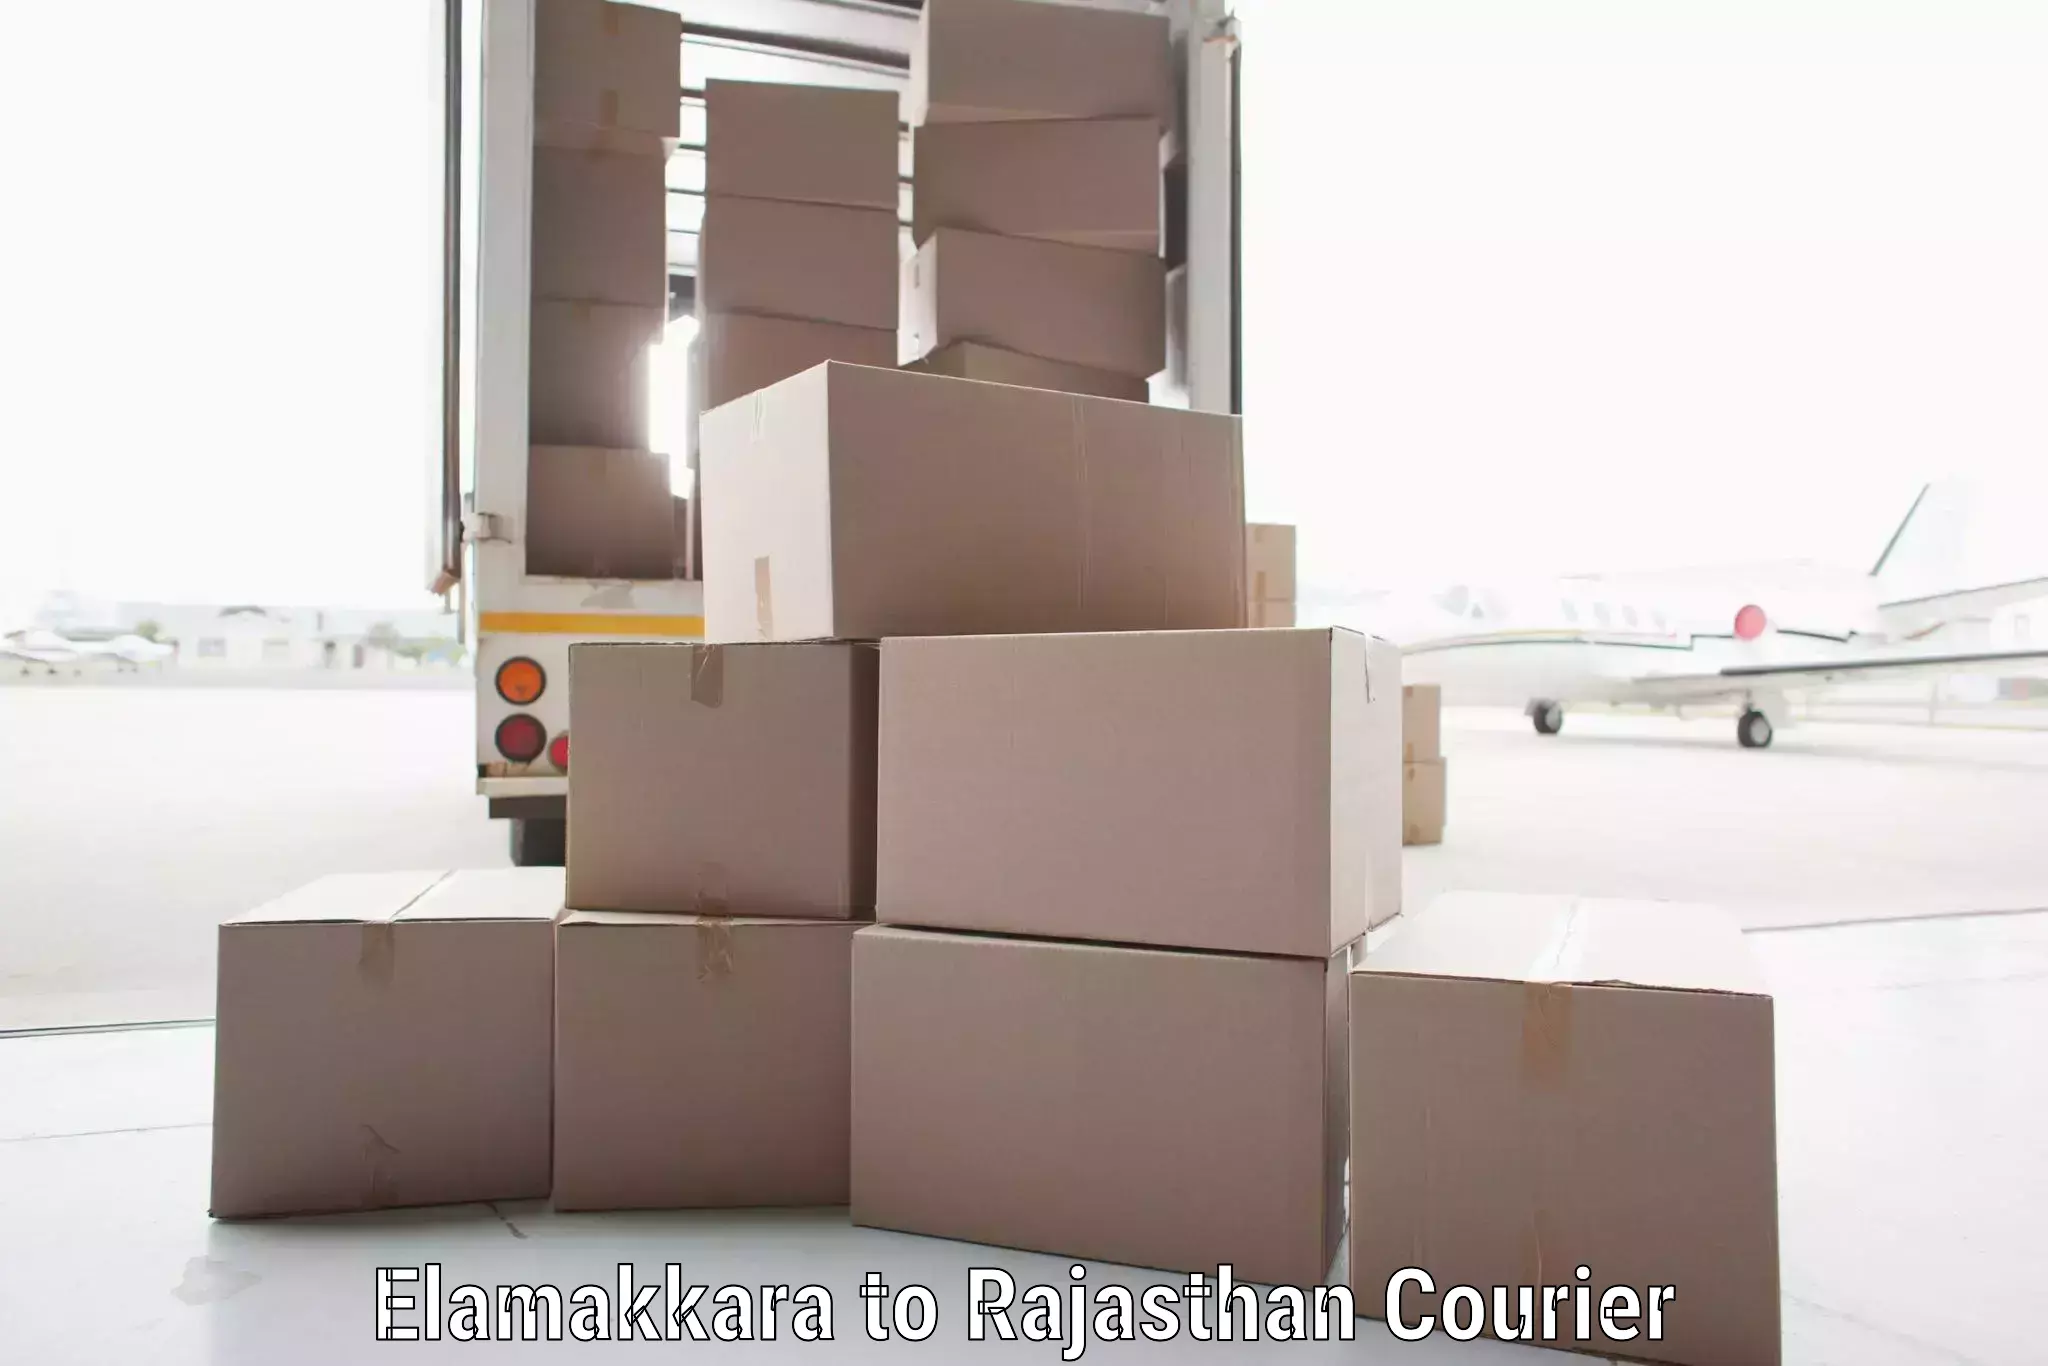 High-efficiency logistics Elamakkara to Dungarpur